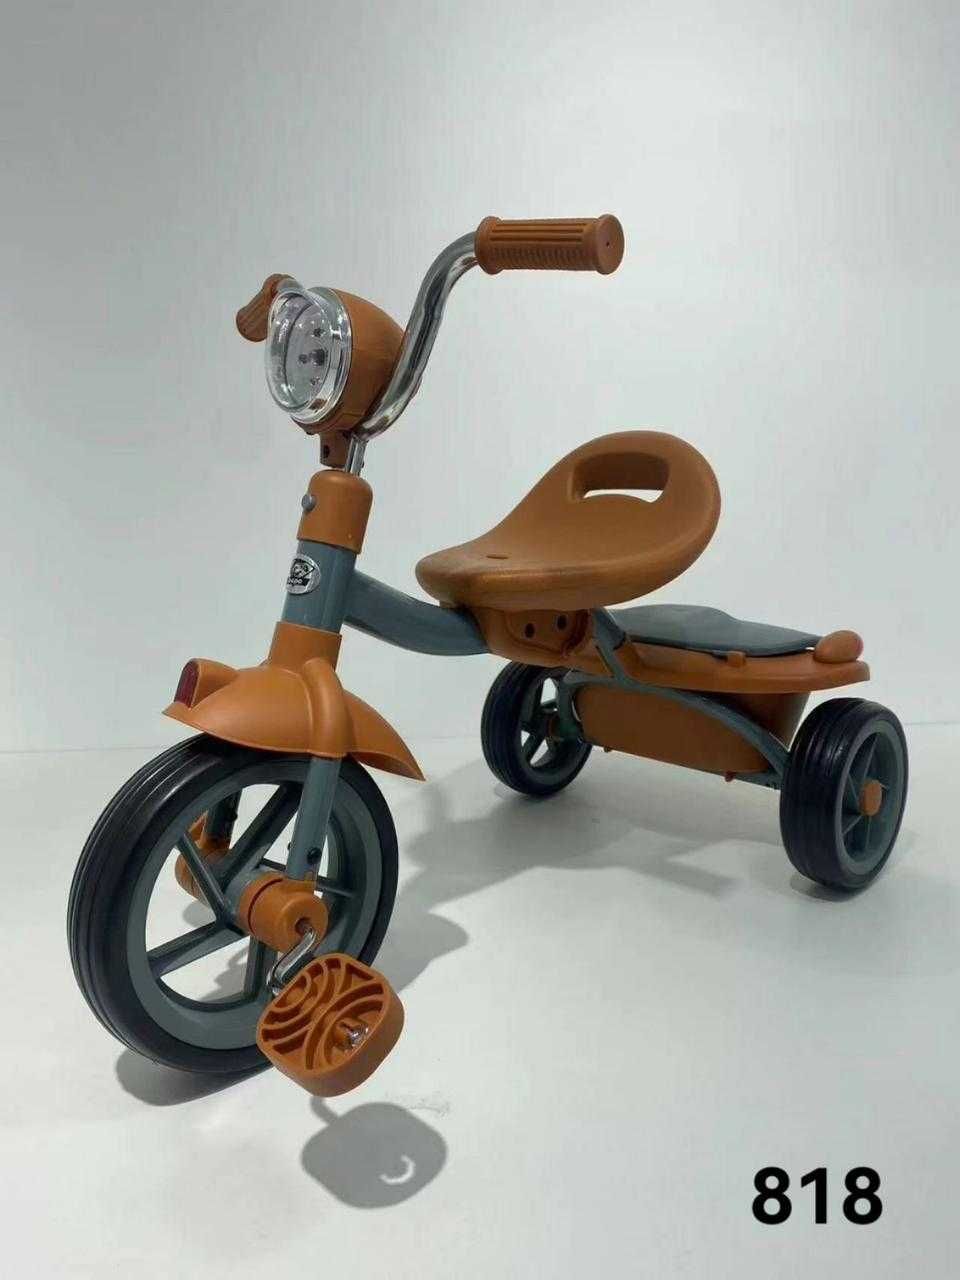 Качественный Трехколесный детский велосипед. Музыкальный. Балдырган